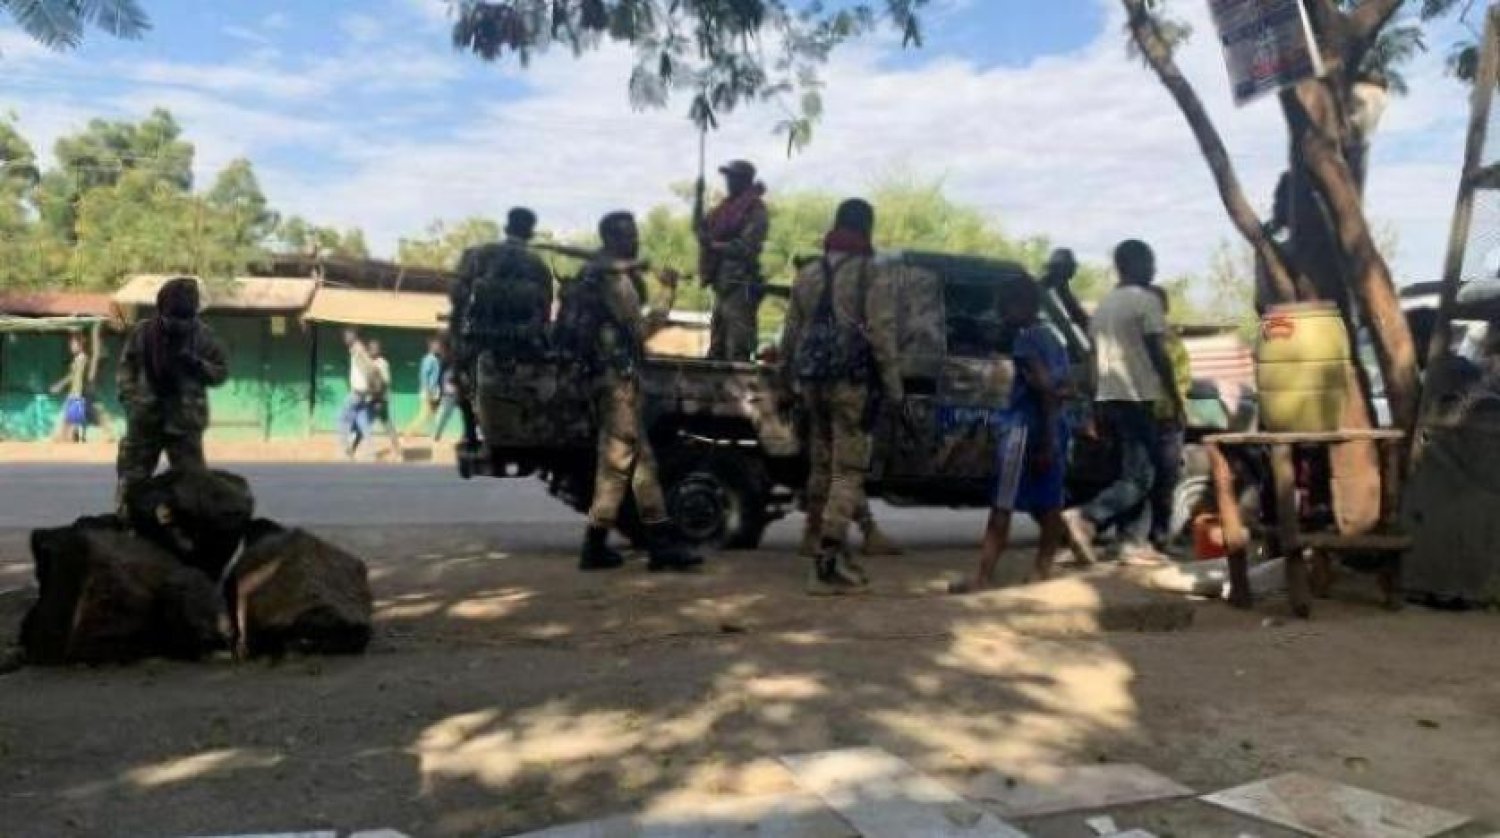 Etiyopya Ulusal Savunma Gücü üyeleri, Tigray sınırına yakın Amhara'da bir göreve gitmeye hazırlanıyor (Arşiv - Reuters)
